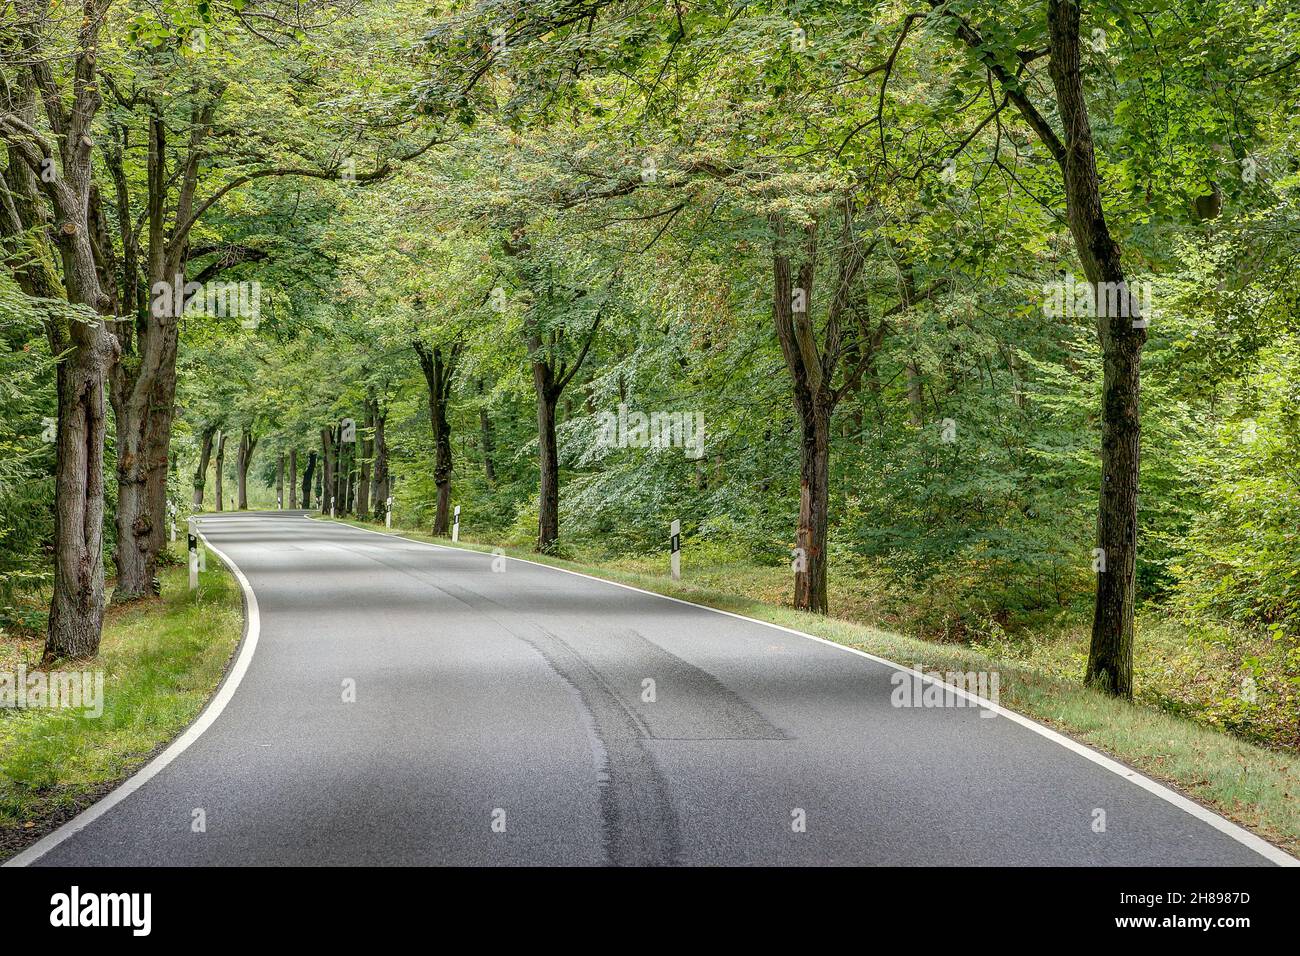 Mit sanften Kurven schlängelt sich die kleine Landstraße durch eine wunderschöne, von Bäumen gesäumte Allee. Stockfoto